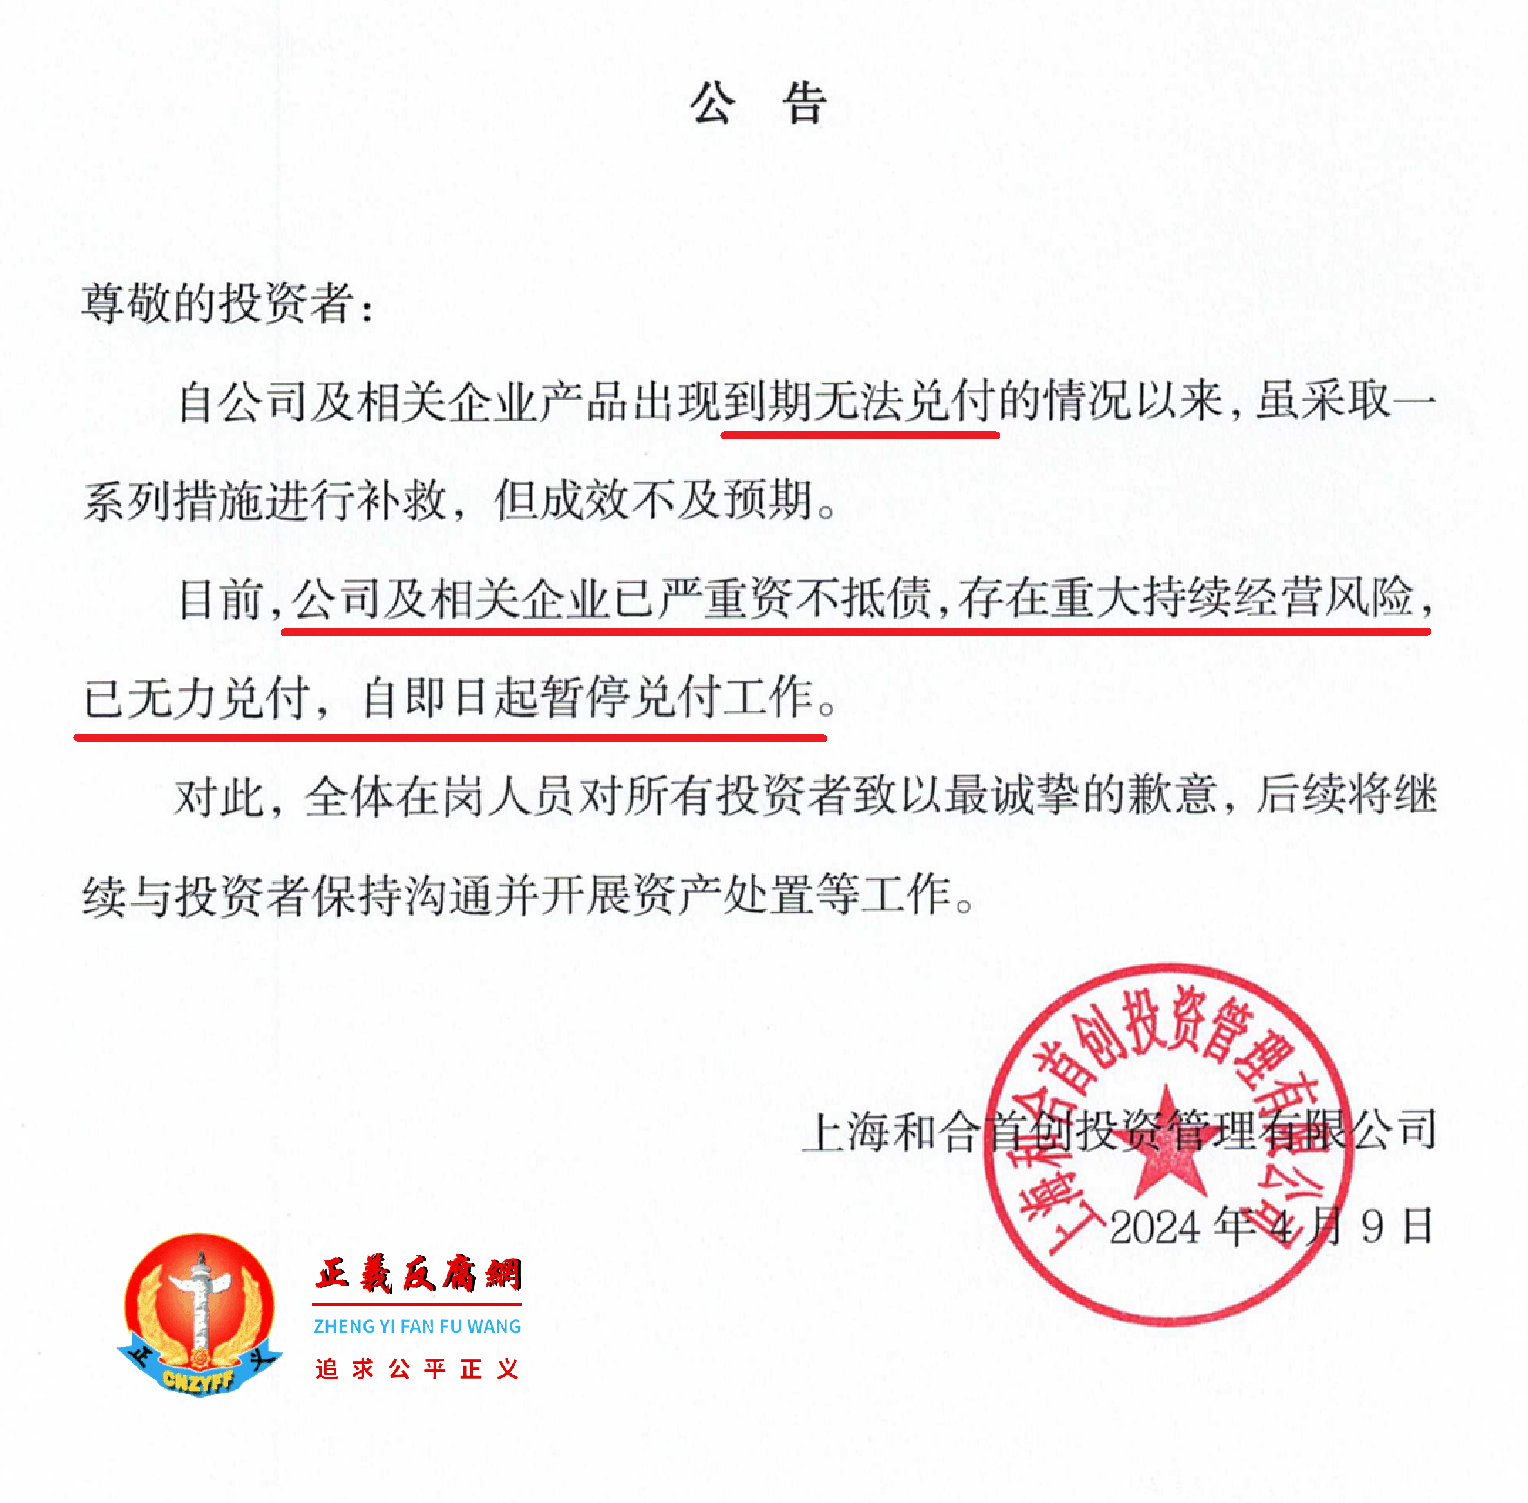 2024年4月9日，上海和合首创投资管理有限公司网站发布《公告》.png